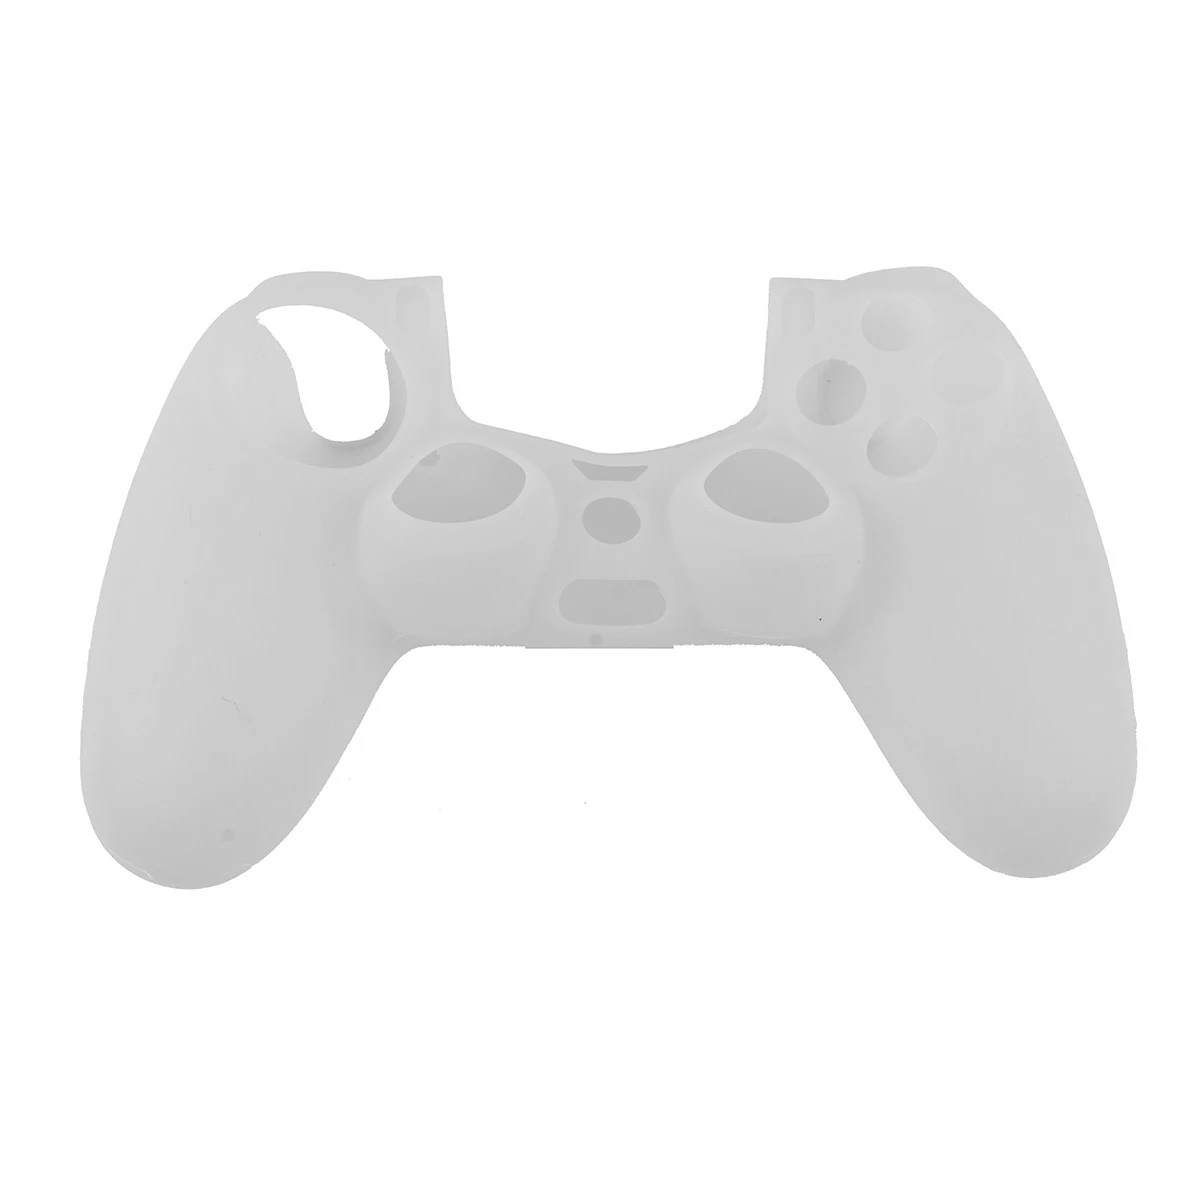 Оболочка контроллера силиконовая мягкая гибкая гелевая резина для PS4 sony Playstation 4 ультра-тонкая крышка аксессуары для контроллера видеоигр